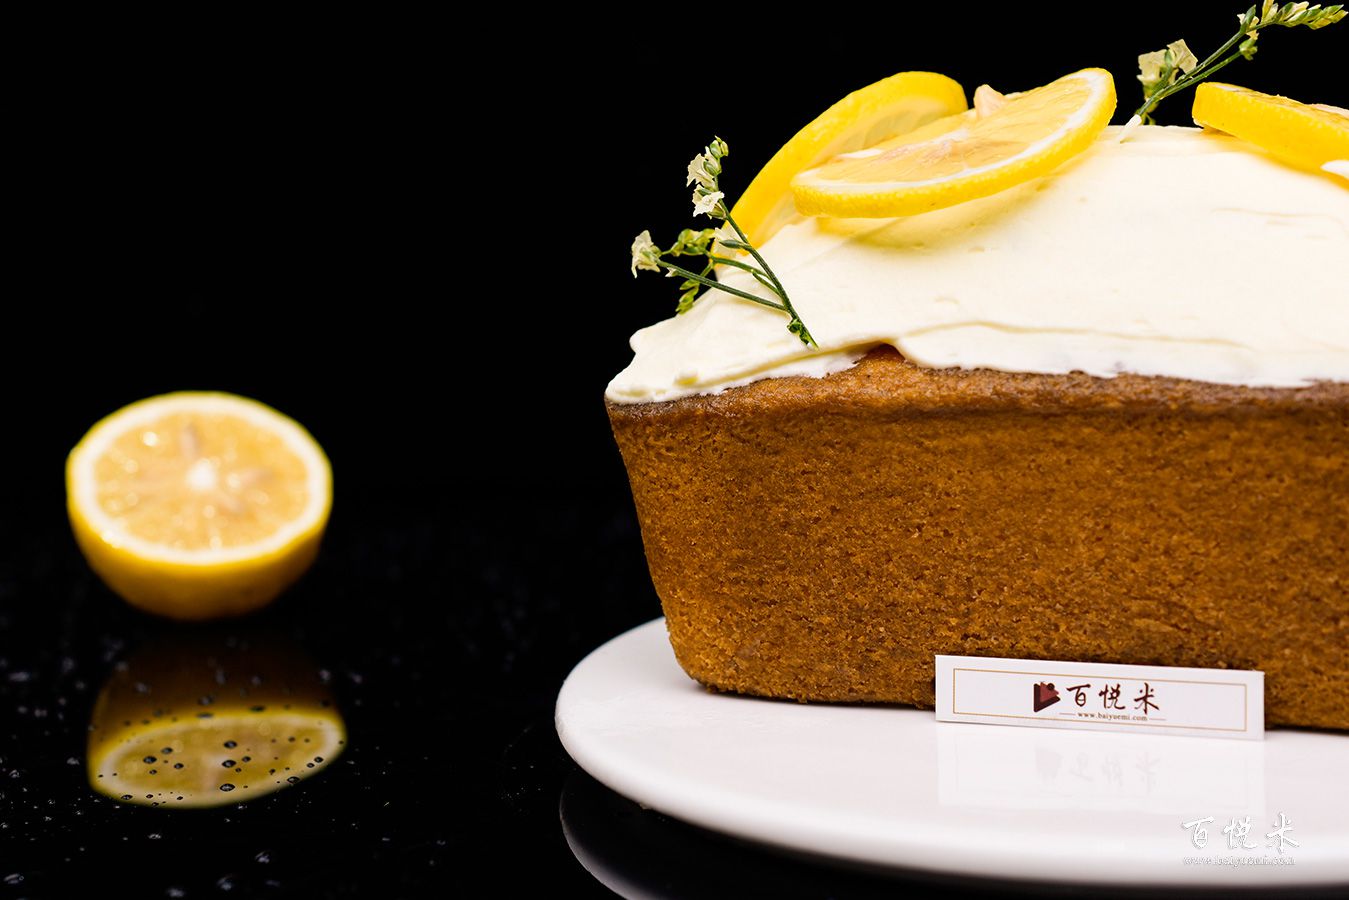 柠檬奶油磅蛋糕高清图片大全【蛋糕图片】_70